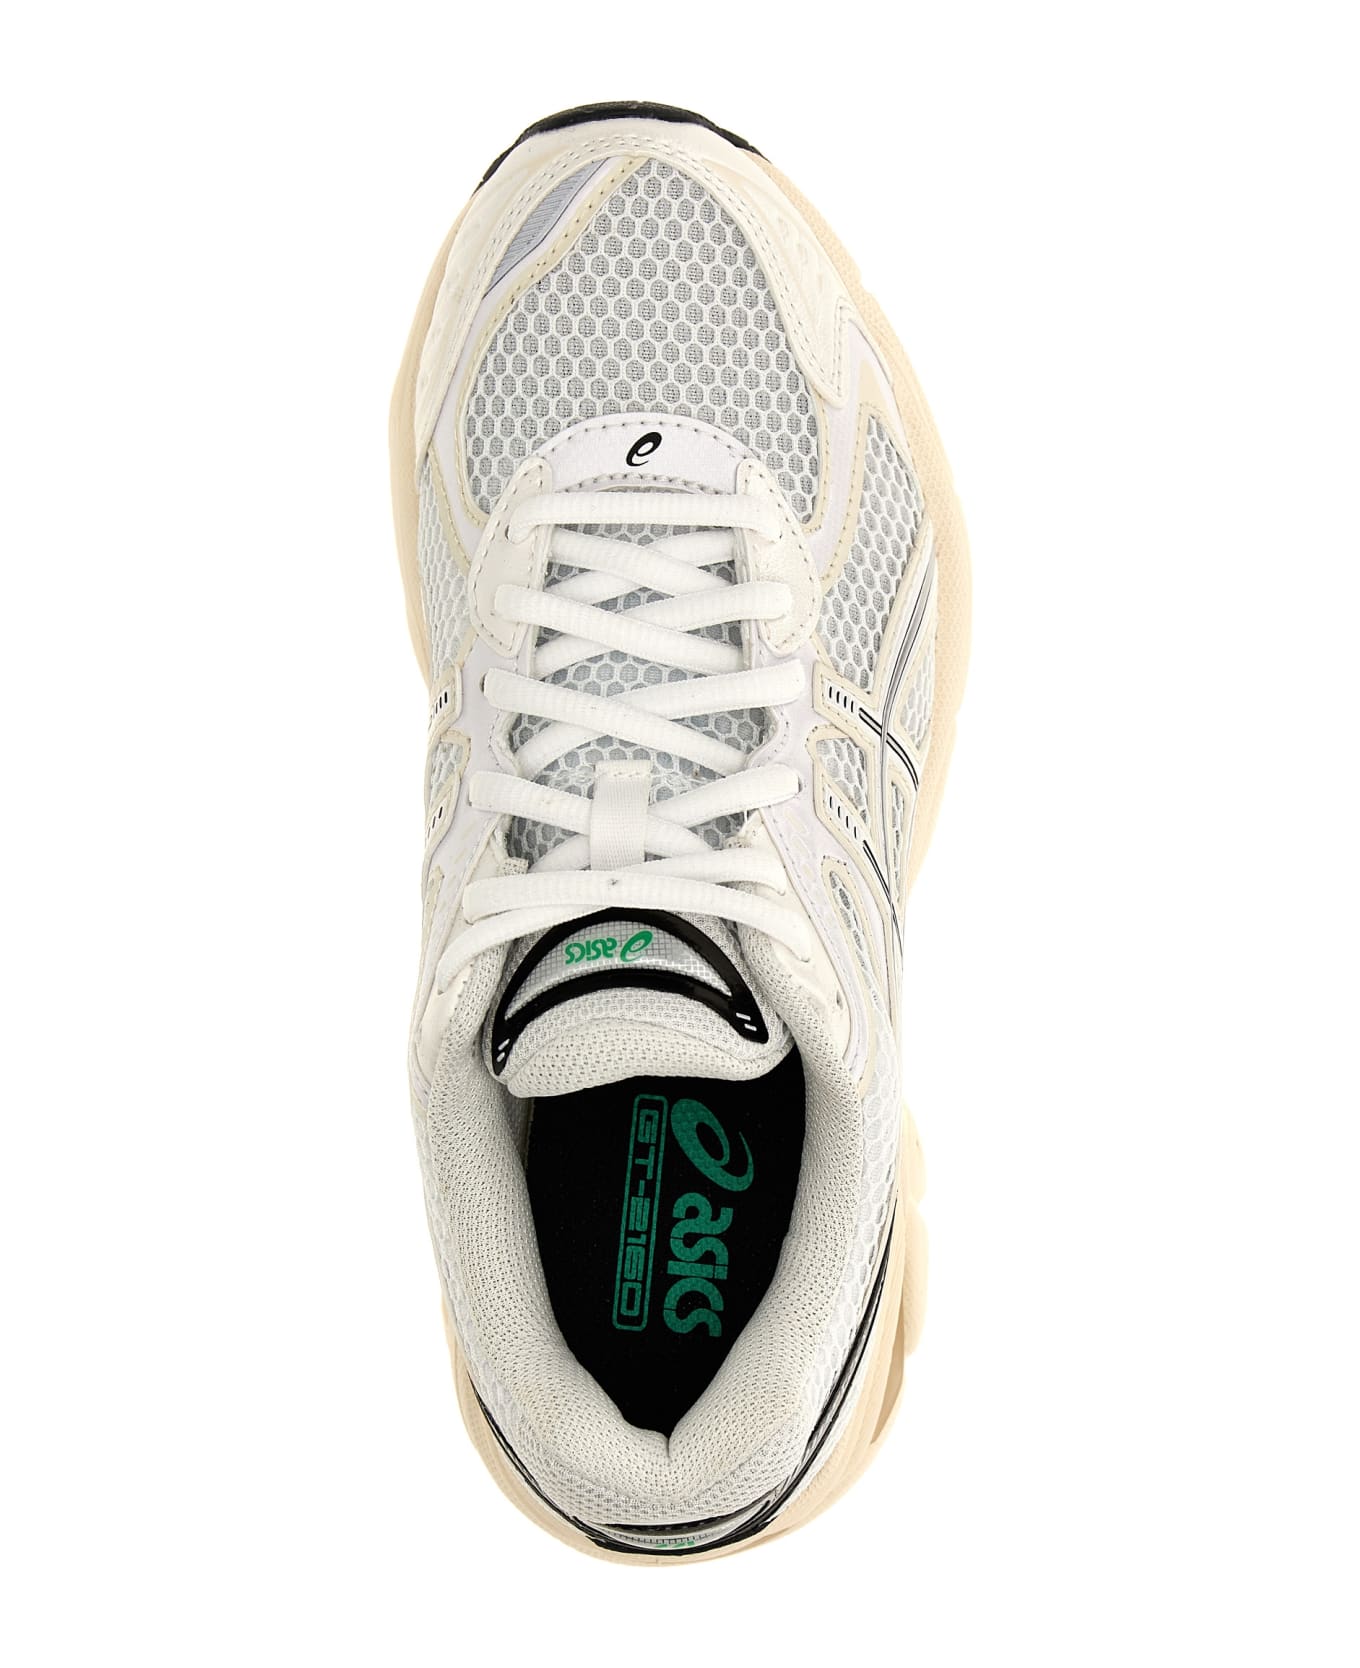 Asics 'gt-2160' Sneakers - White スニーカー